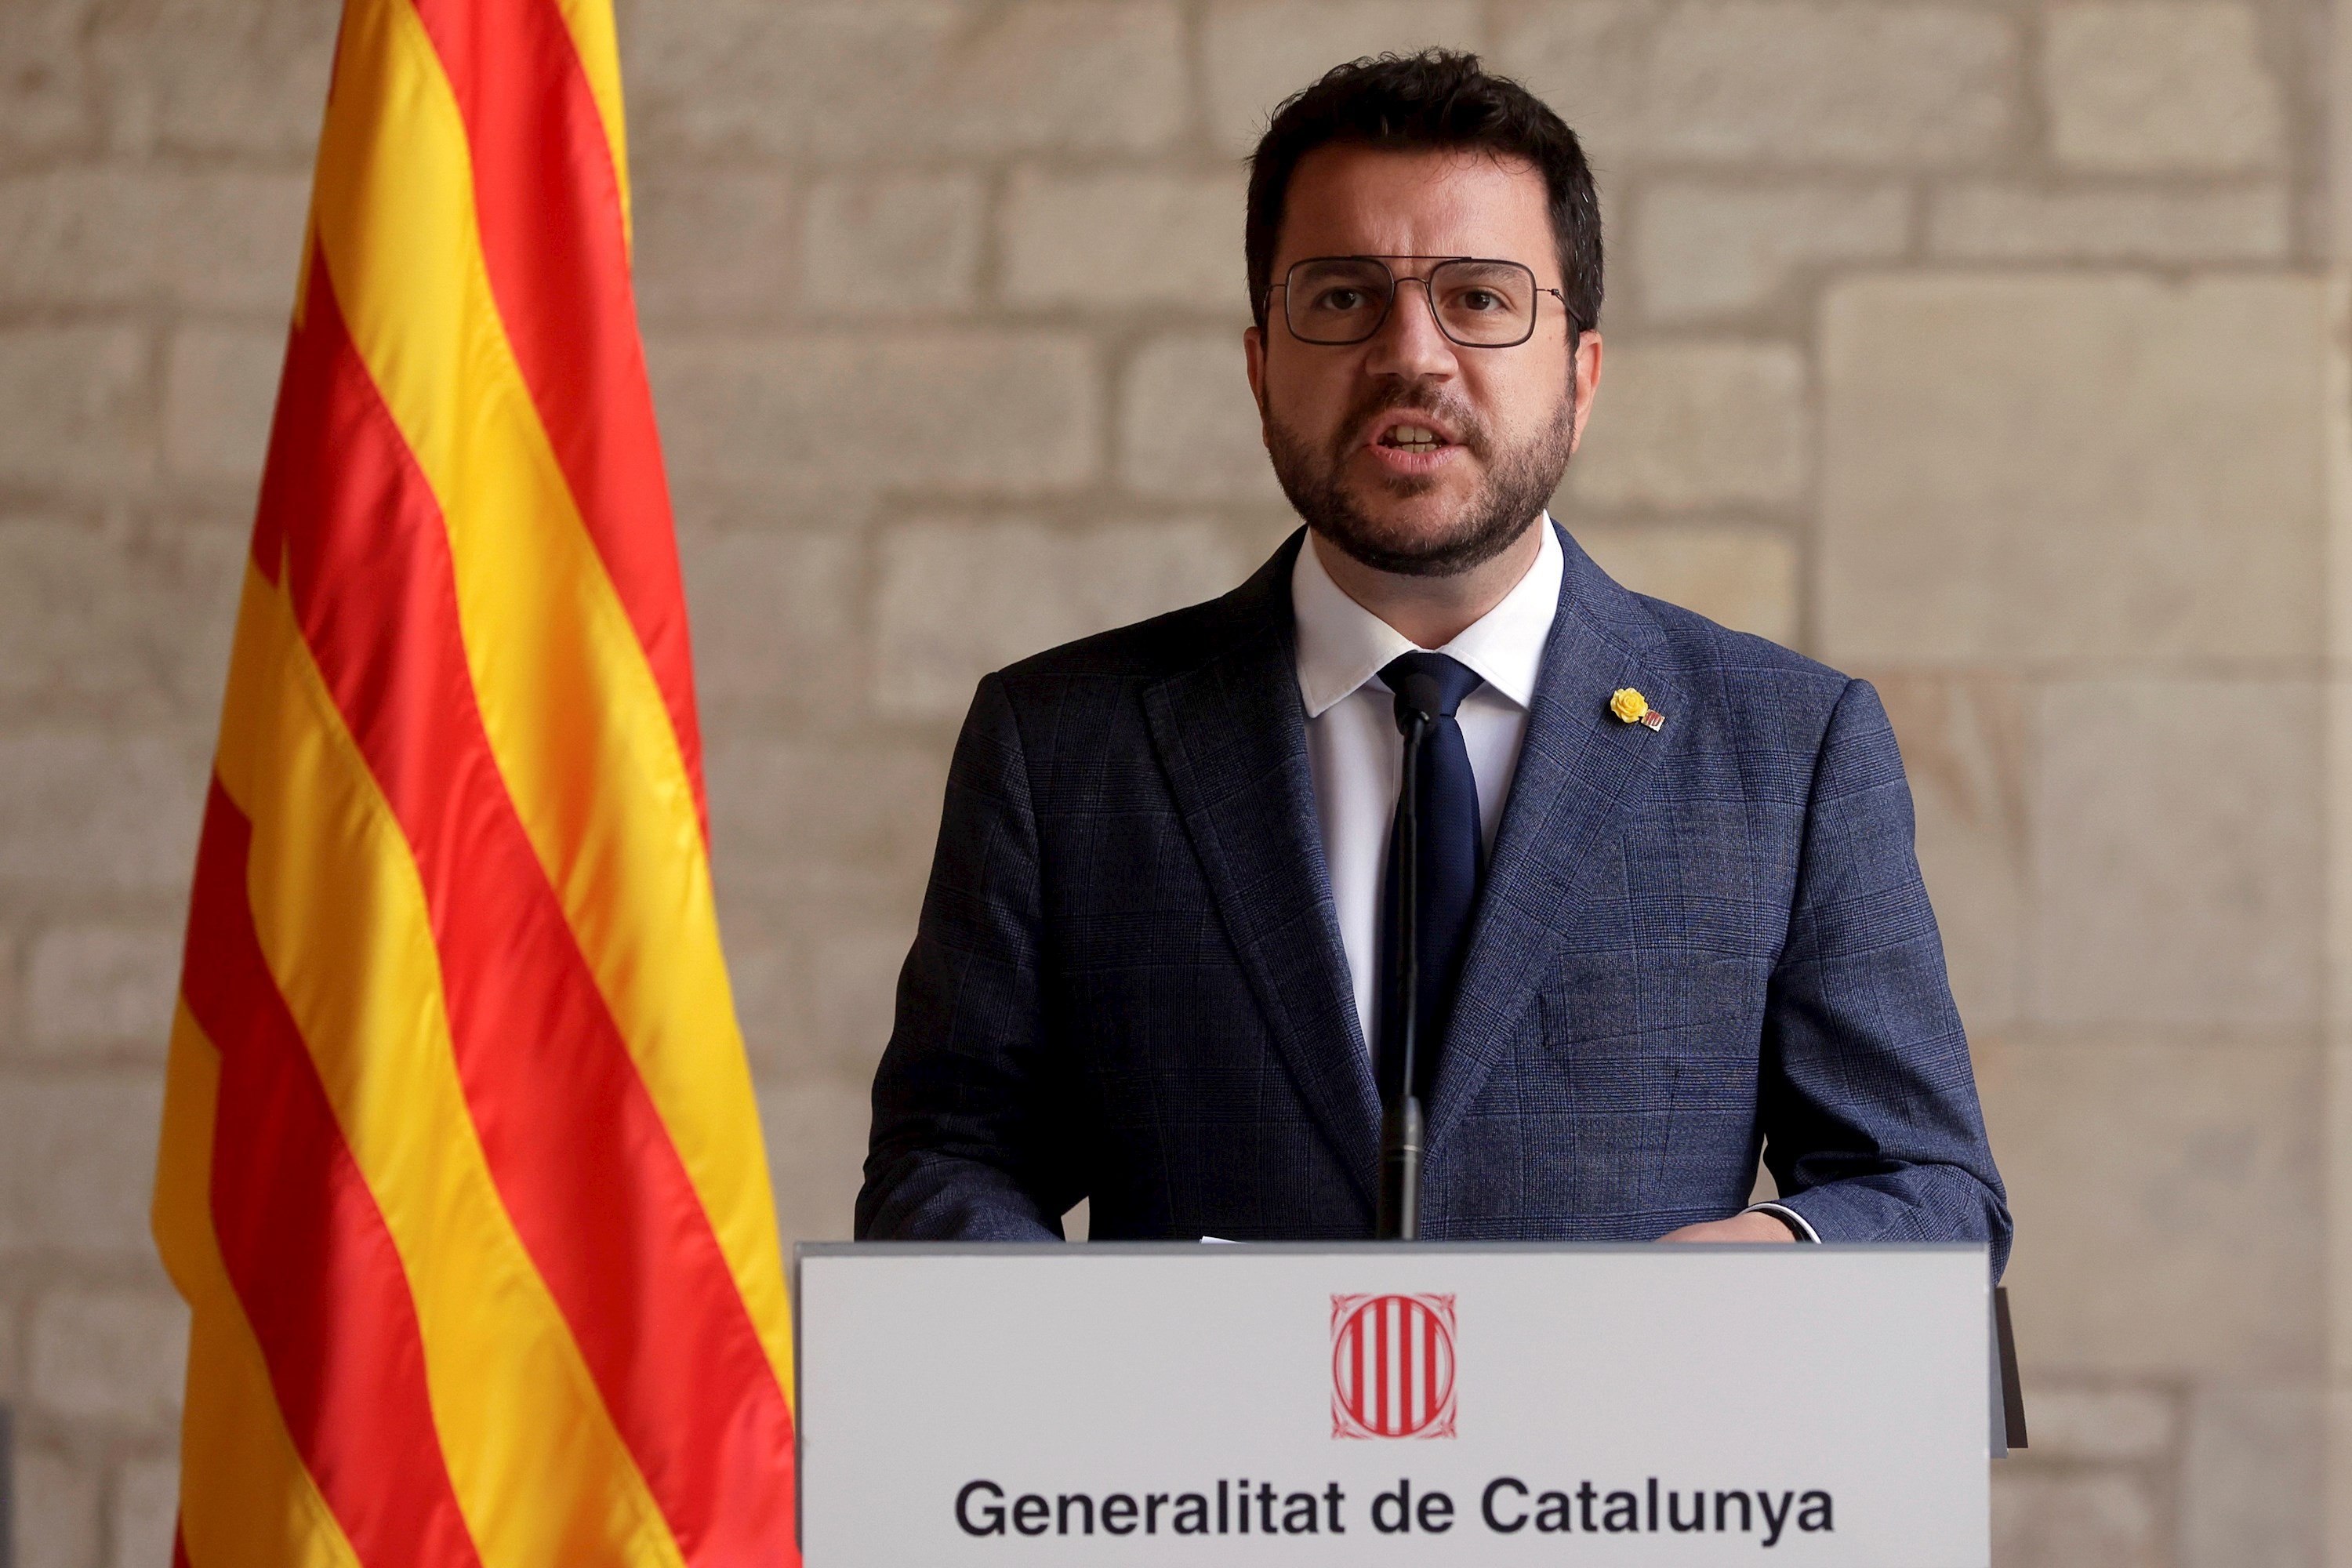 Aragonès, davant la detenció de Puigdemont: "S’ha d’aturar la repressió judicial"